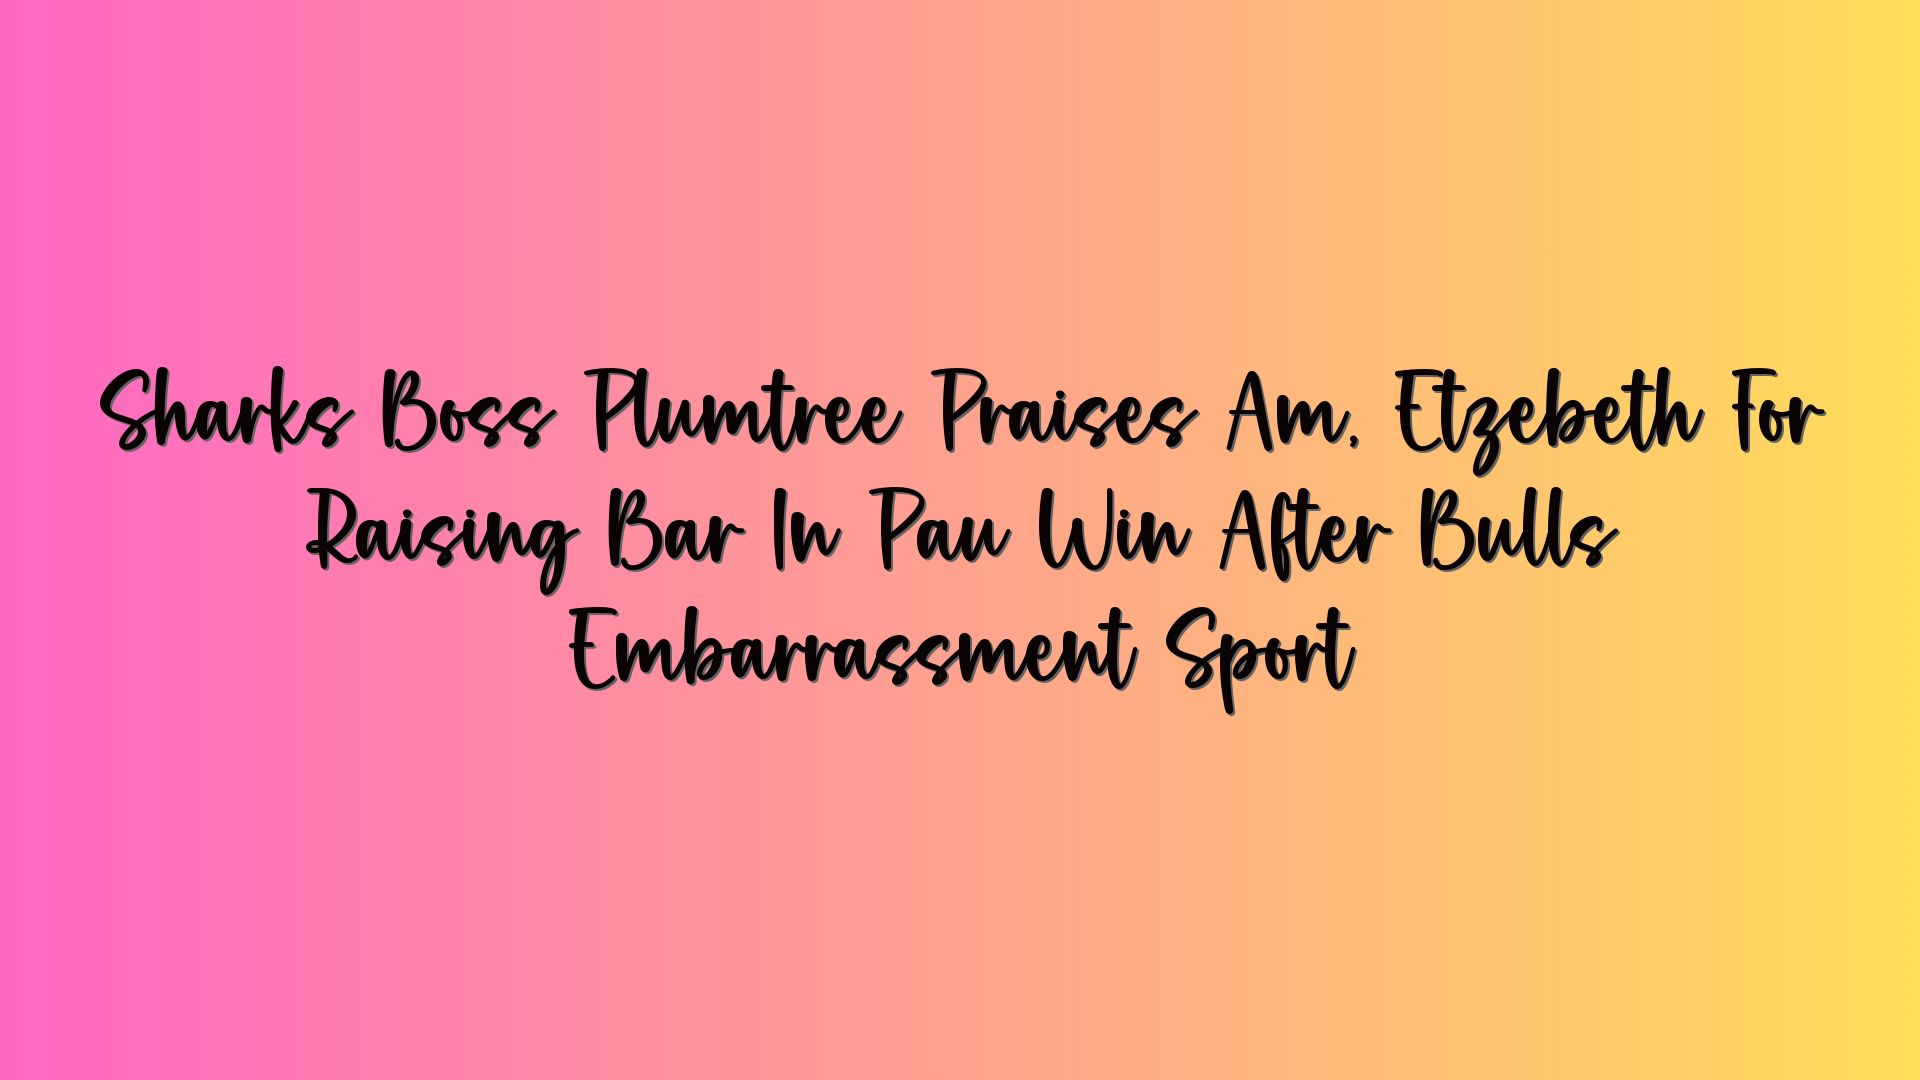 Sharks Boss Plumtree Praises Am, Etzebeth For Raising Bar In Pau Win After Bulls Embarrassment Sport